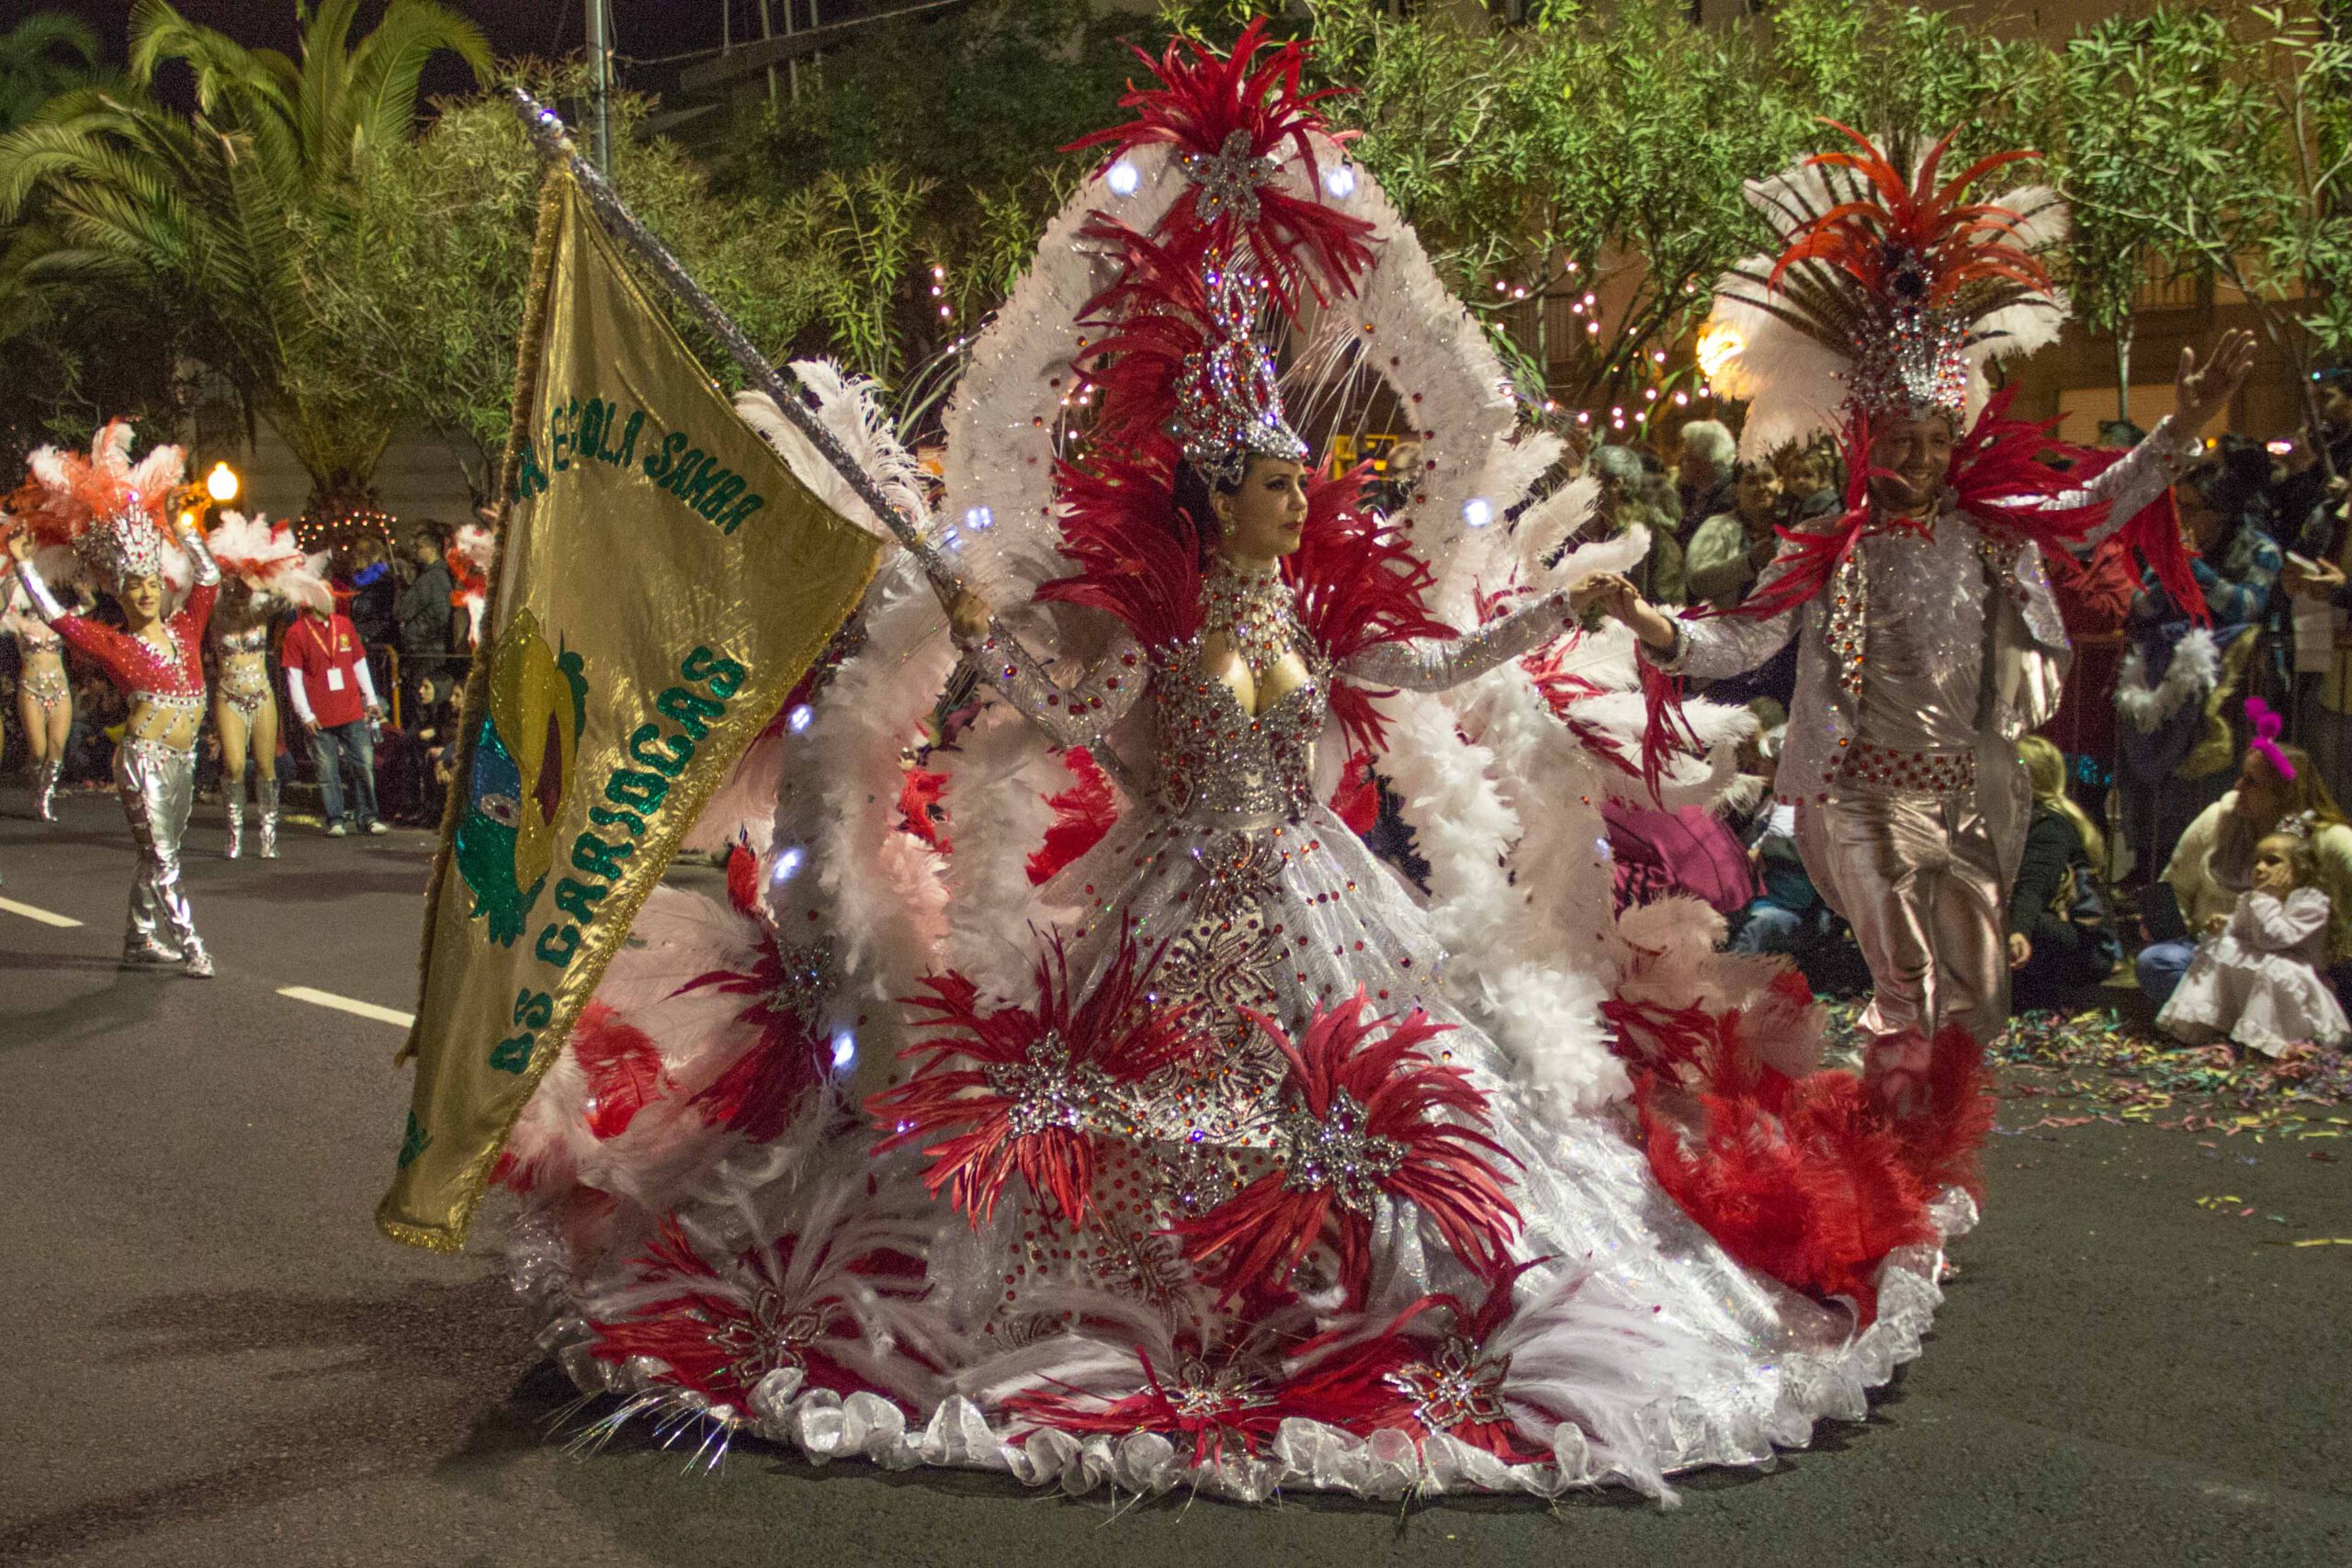 Madeiras karneval: Samba på den frodige ø